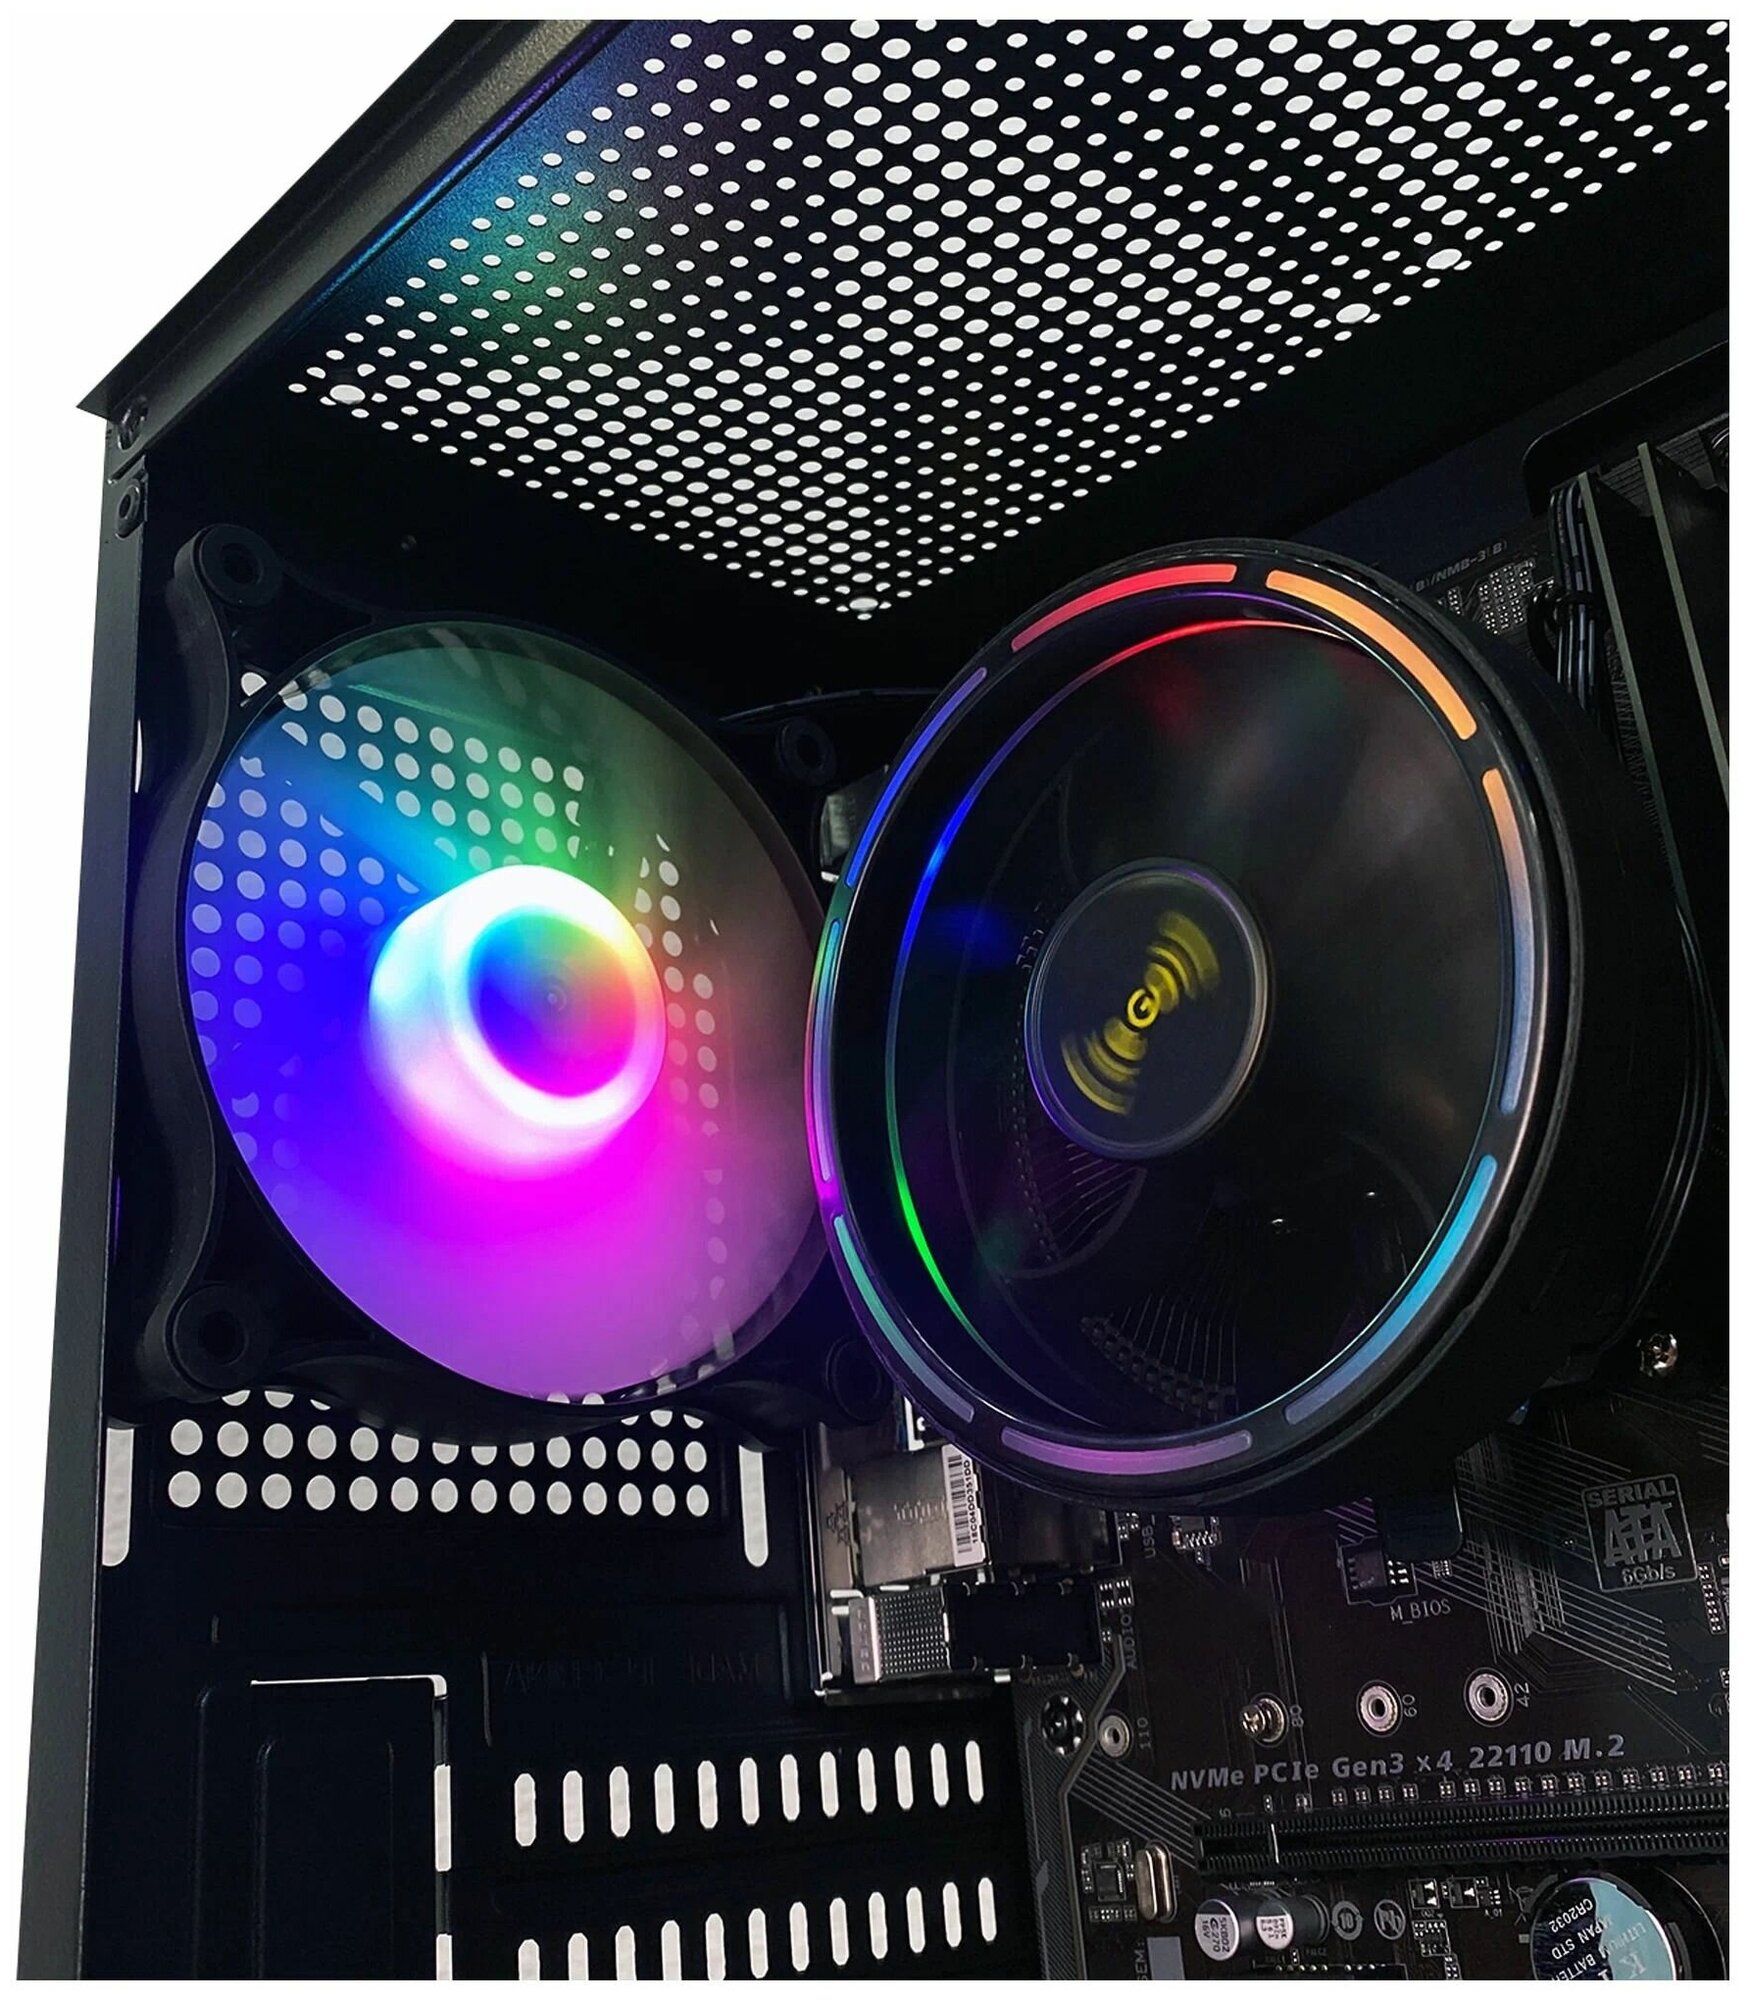 Игровой компьютер Intercom Pro, AMD A8 9600, RAM 16 ГБ, SSD 240 ГБ, AMD Radeon Vega 3), черный